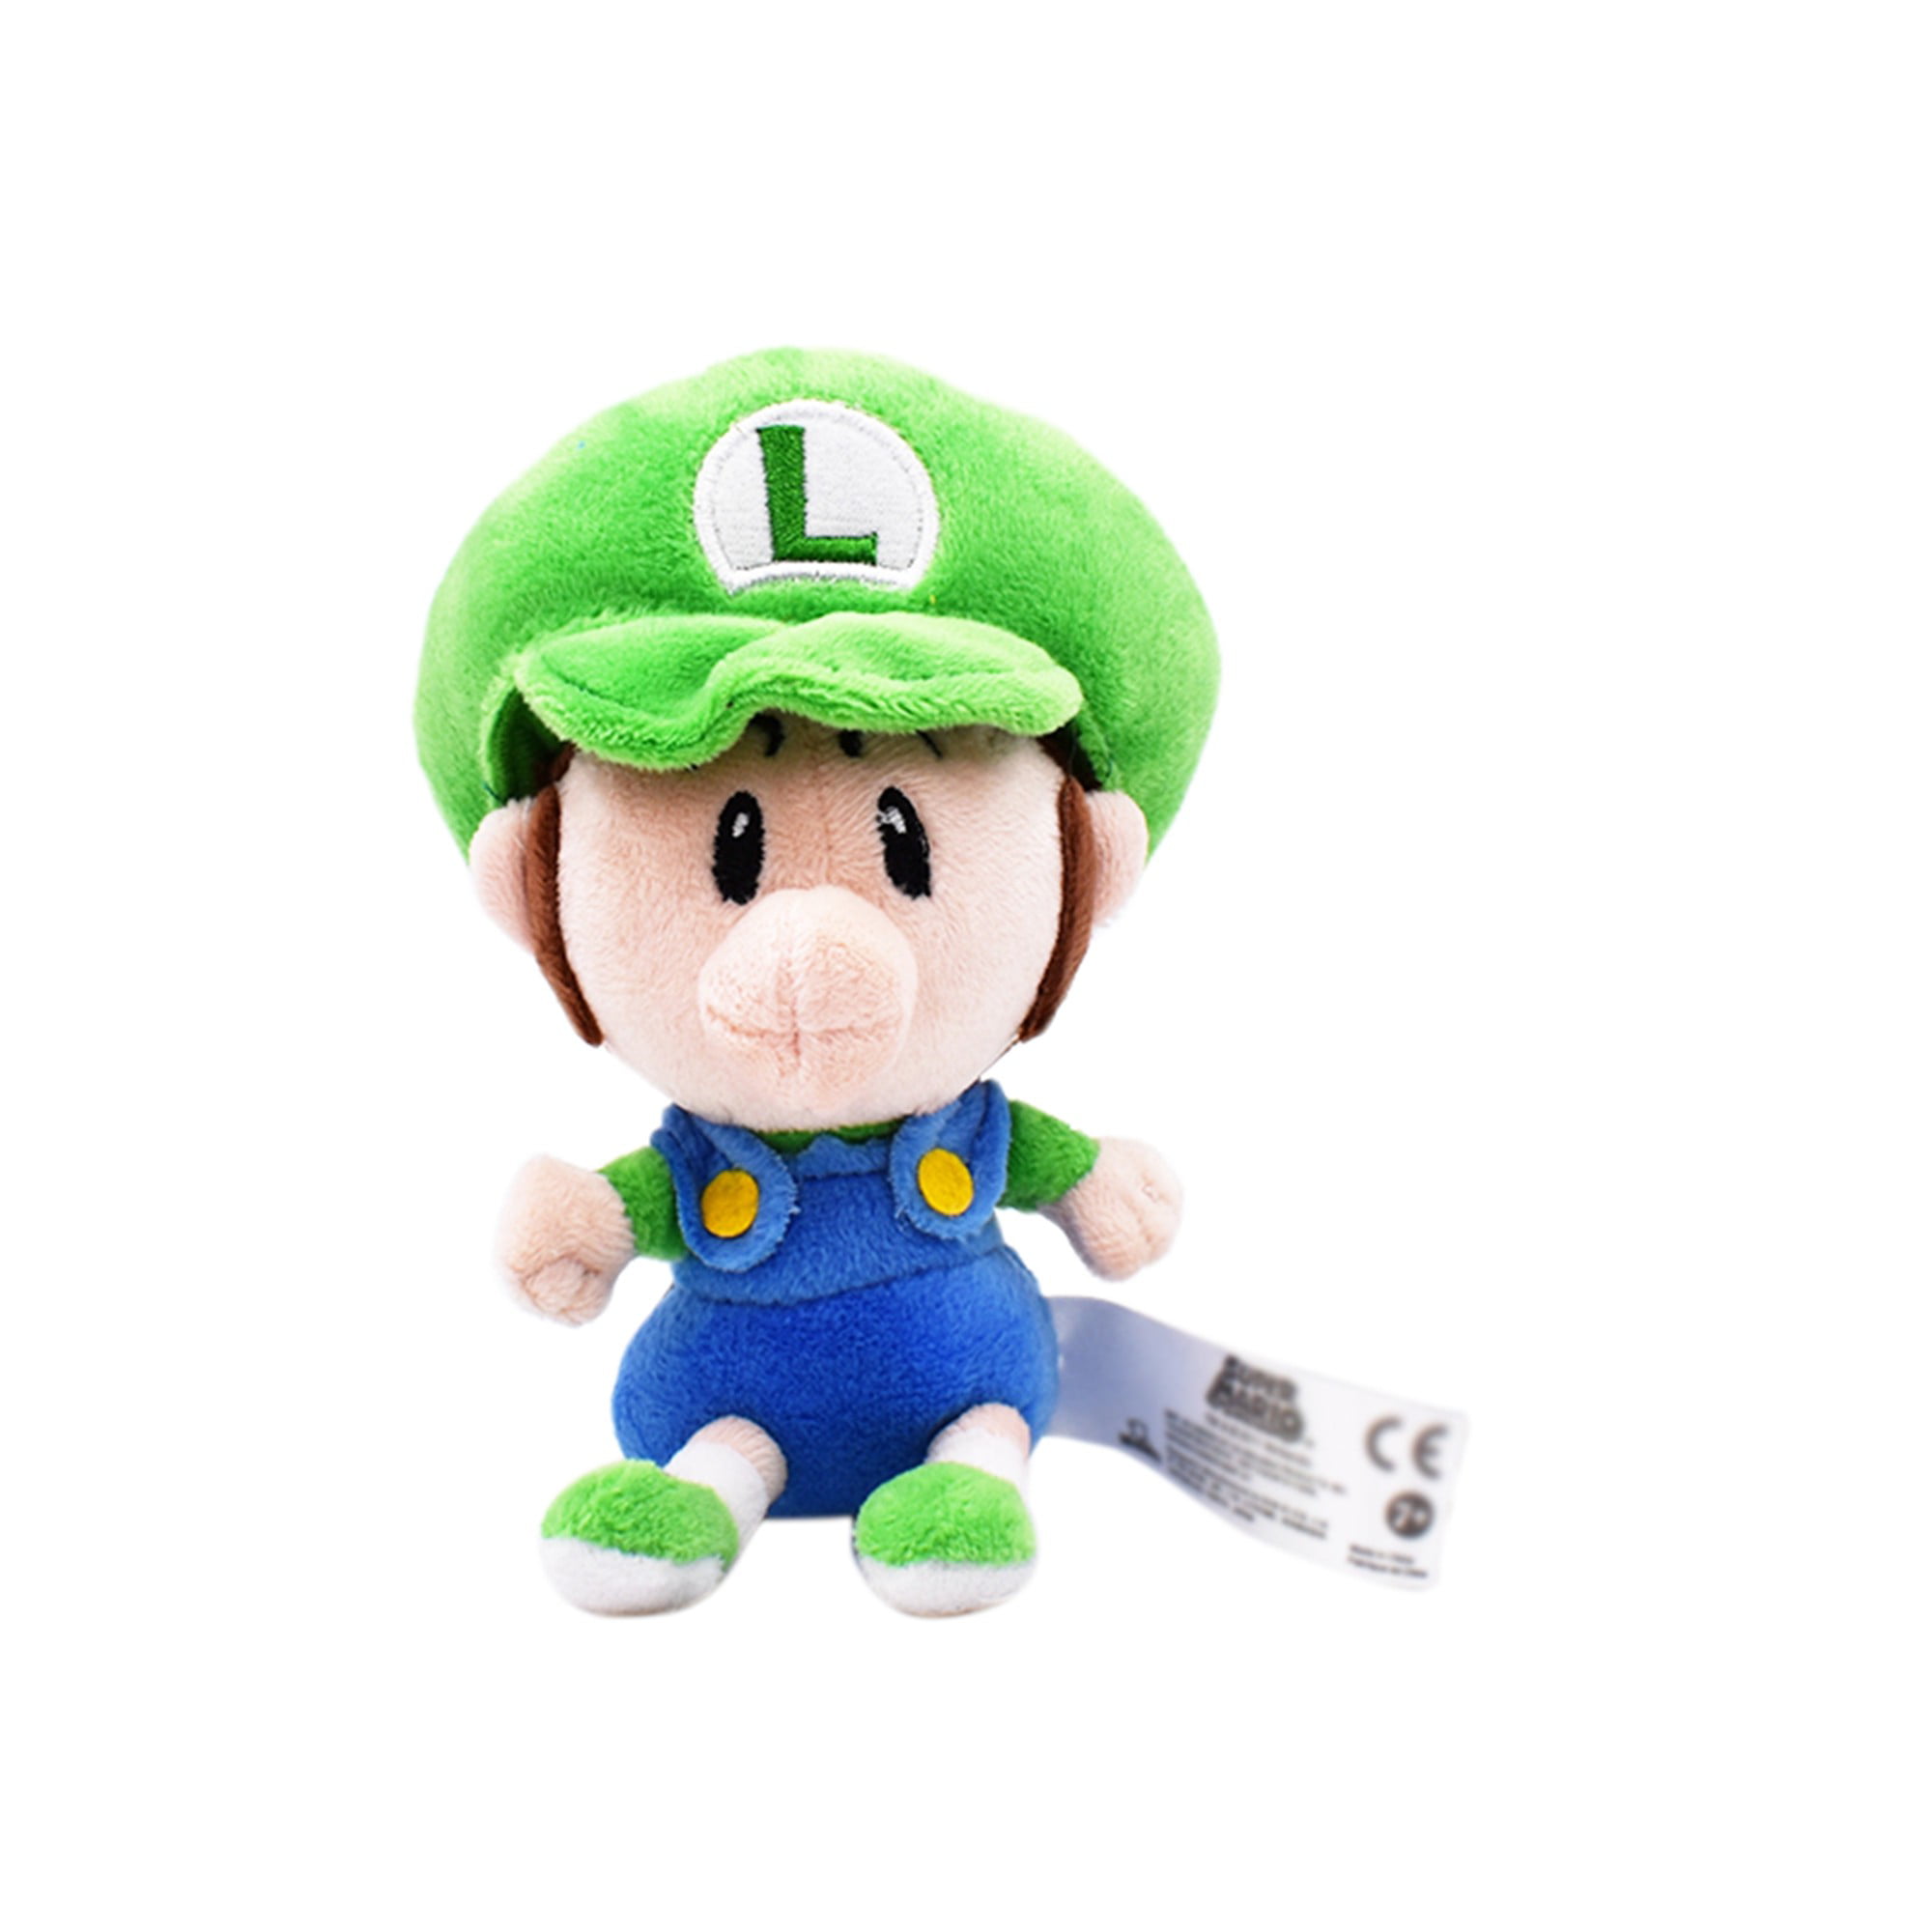 Baby Luigi Super Mario  Plush Toy 16cm 